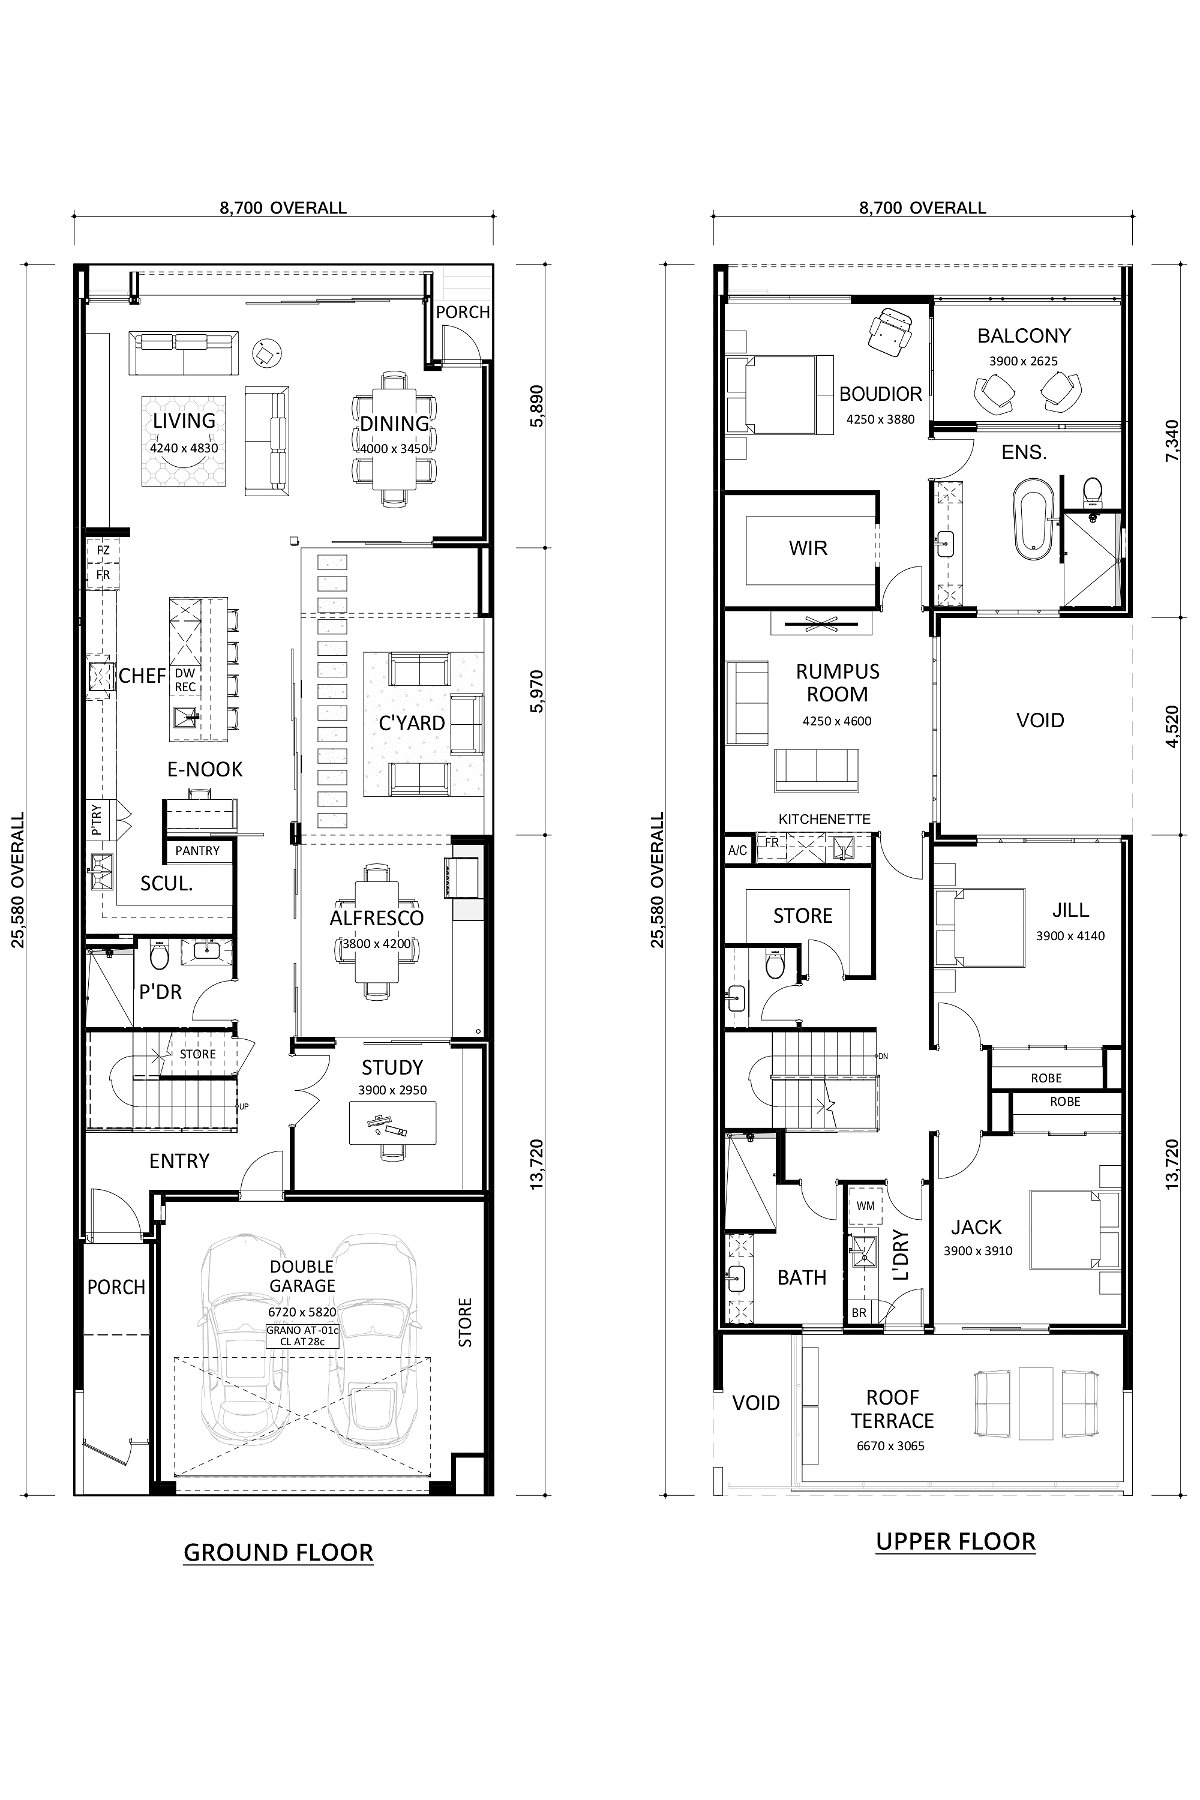 Residential Attitudes - China White - Floorplan - China White Floorplan Website